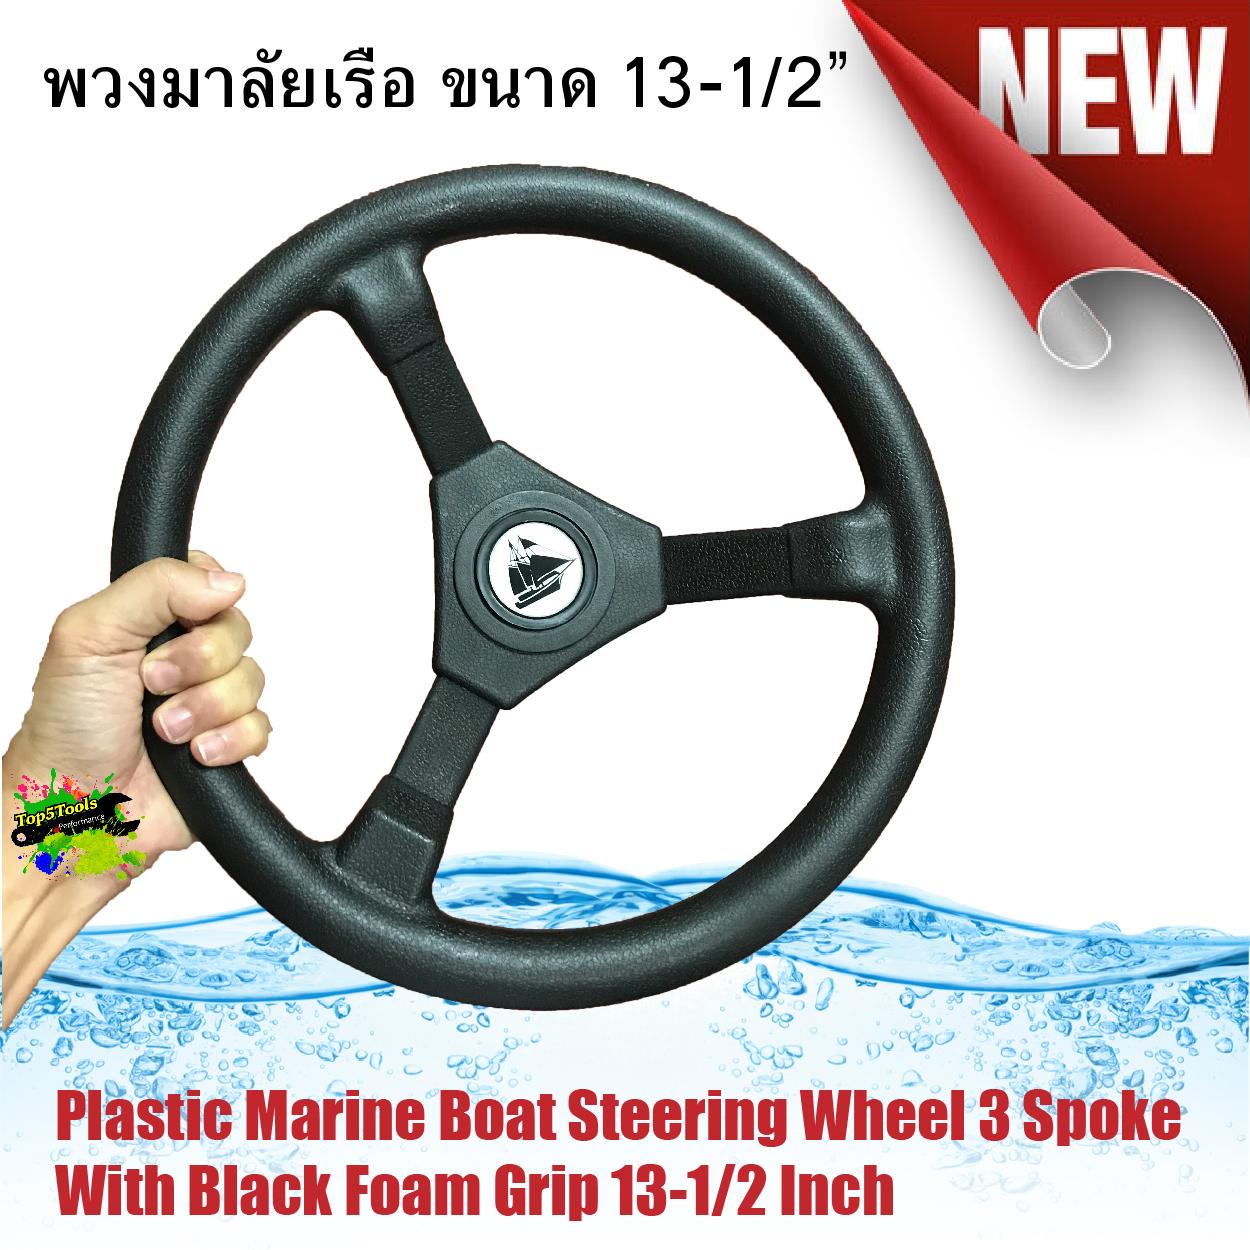 พวงมาลัยเรือ Plastic Marine Boat Steering Wheel 3 Spoke With Black Foam Grip 13-1/2 Inch